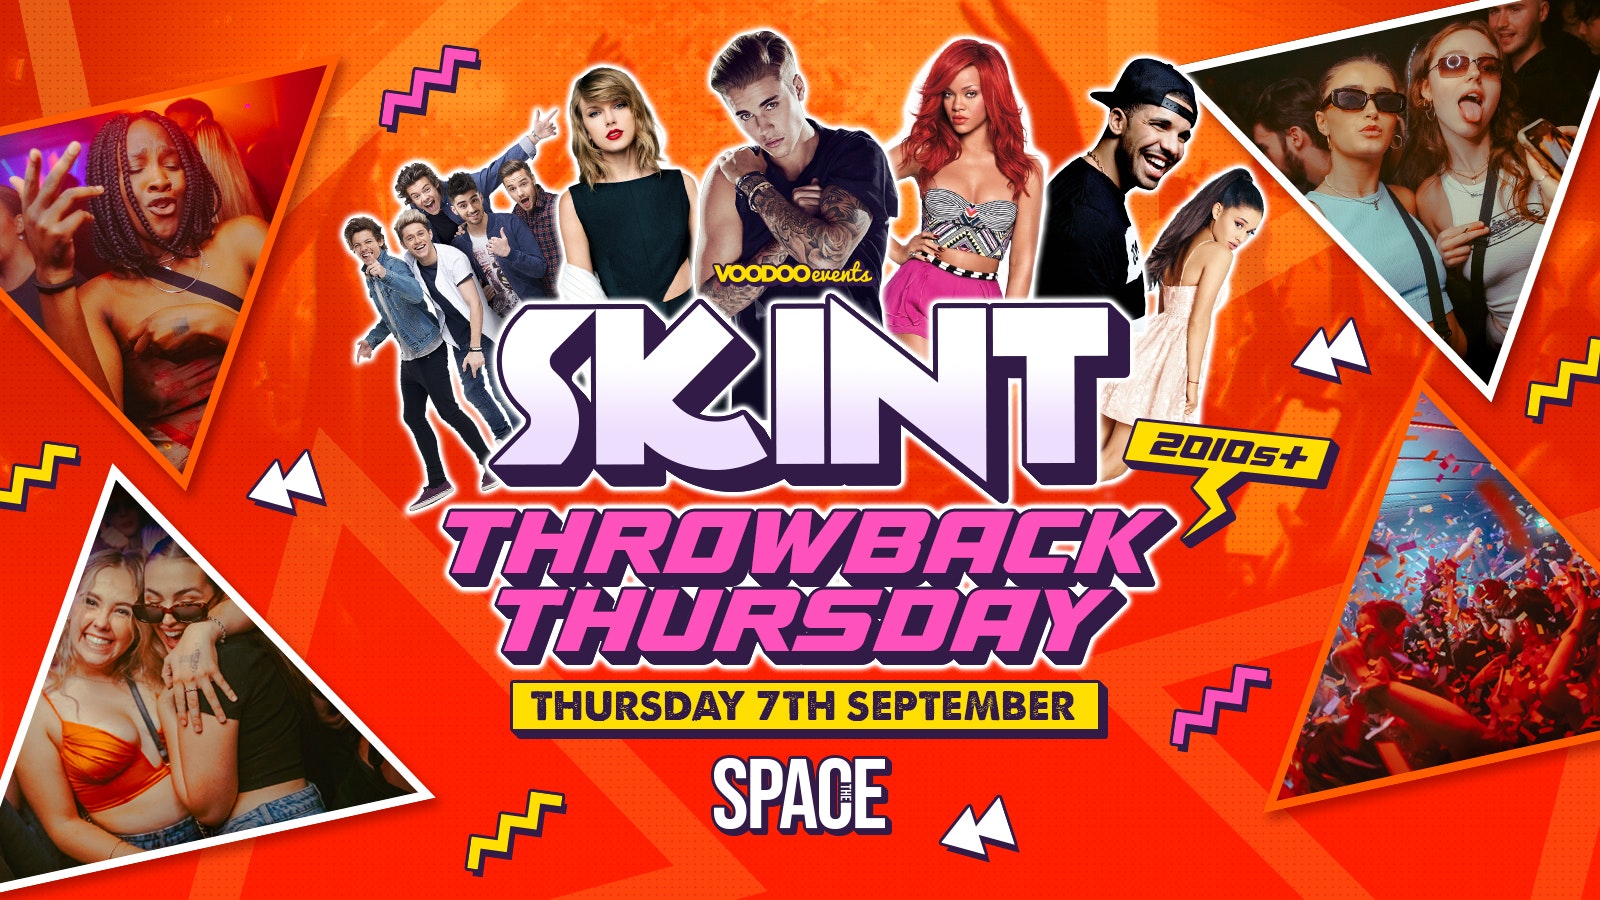 Skint Thursdays at Space – Throwback Thursday – 7th September